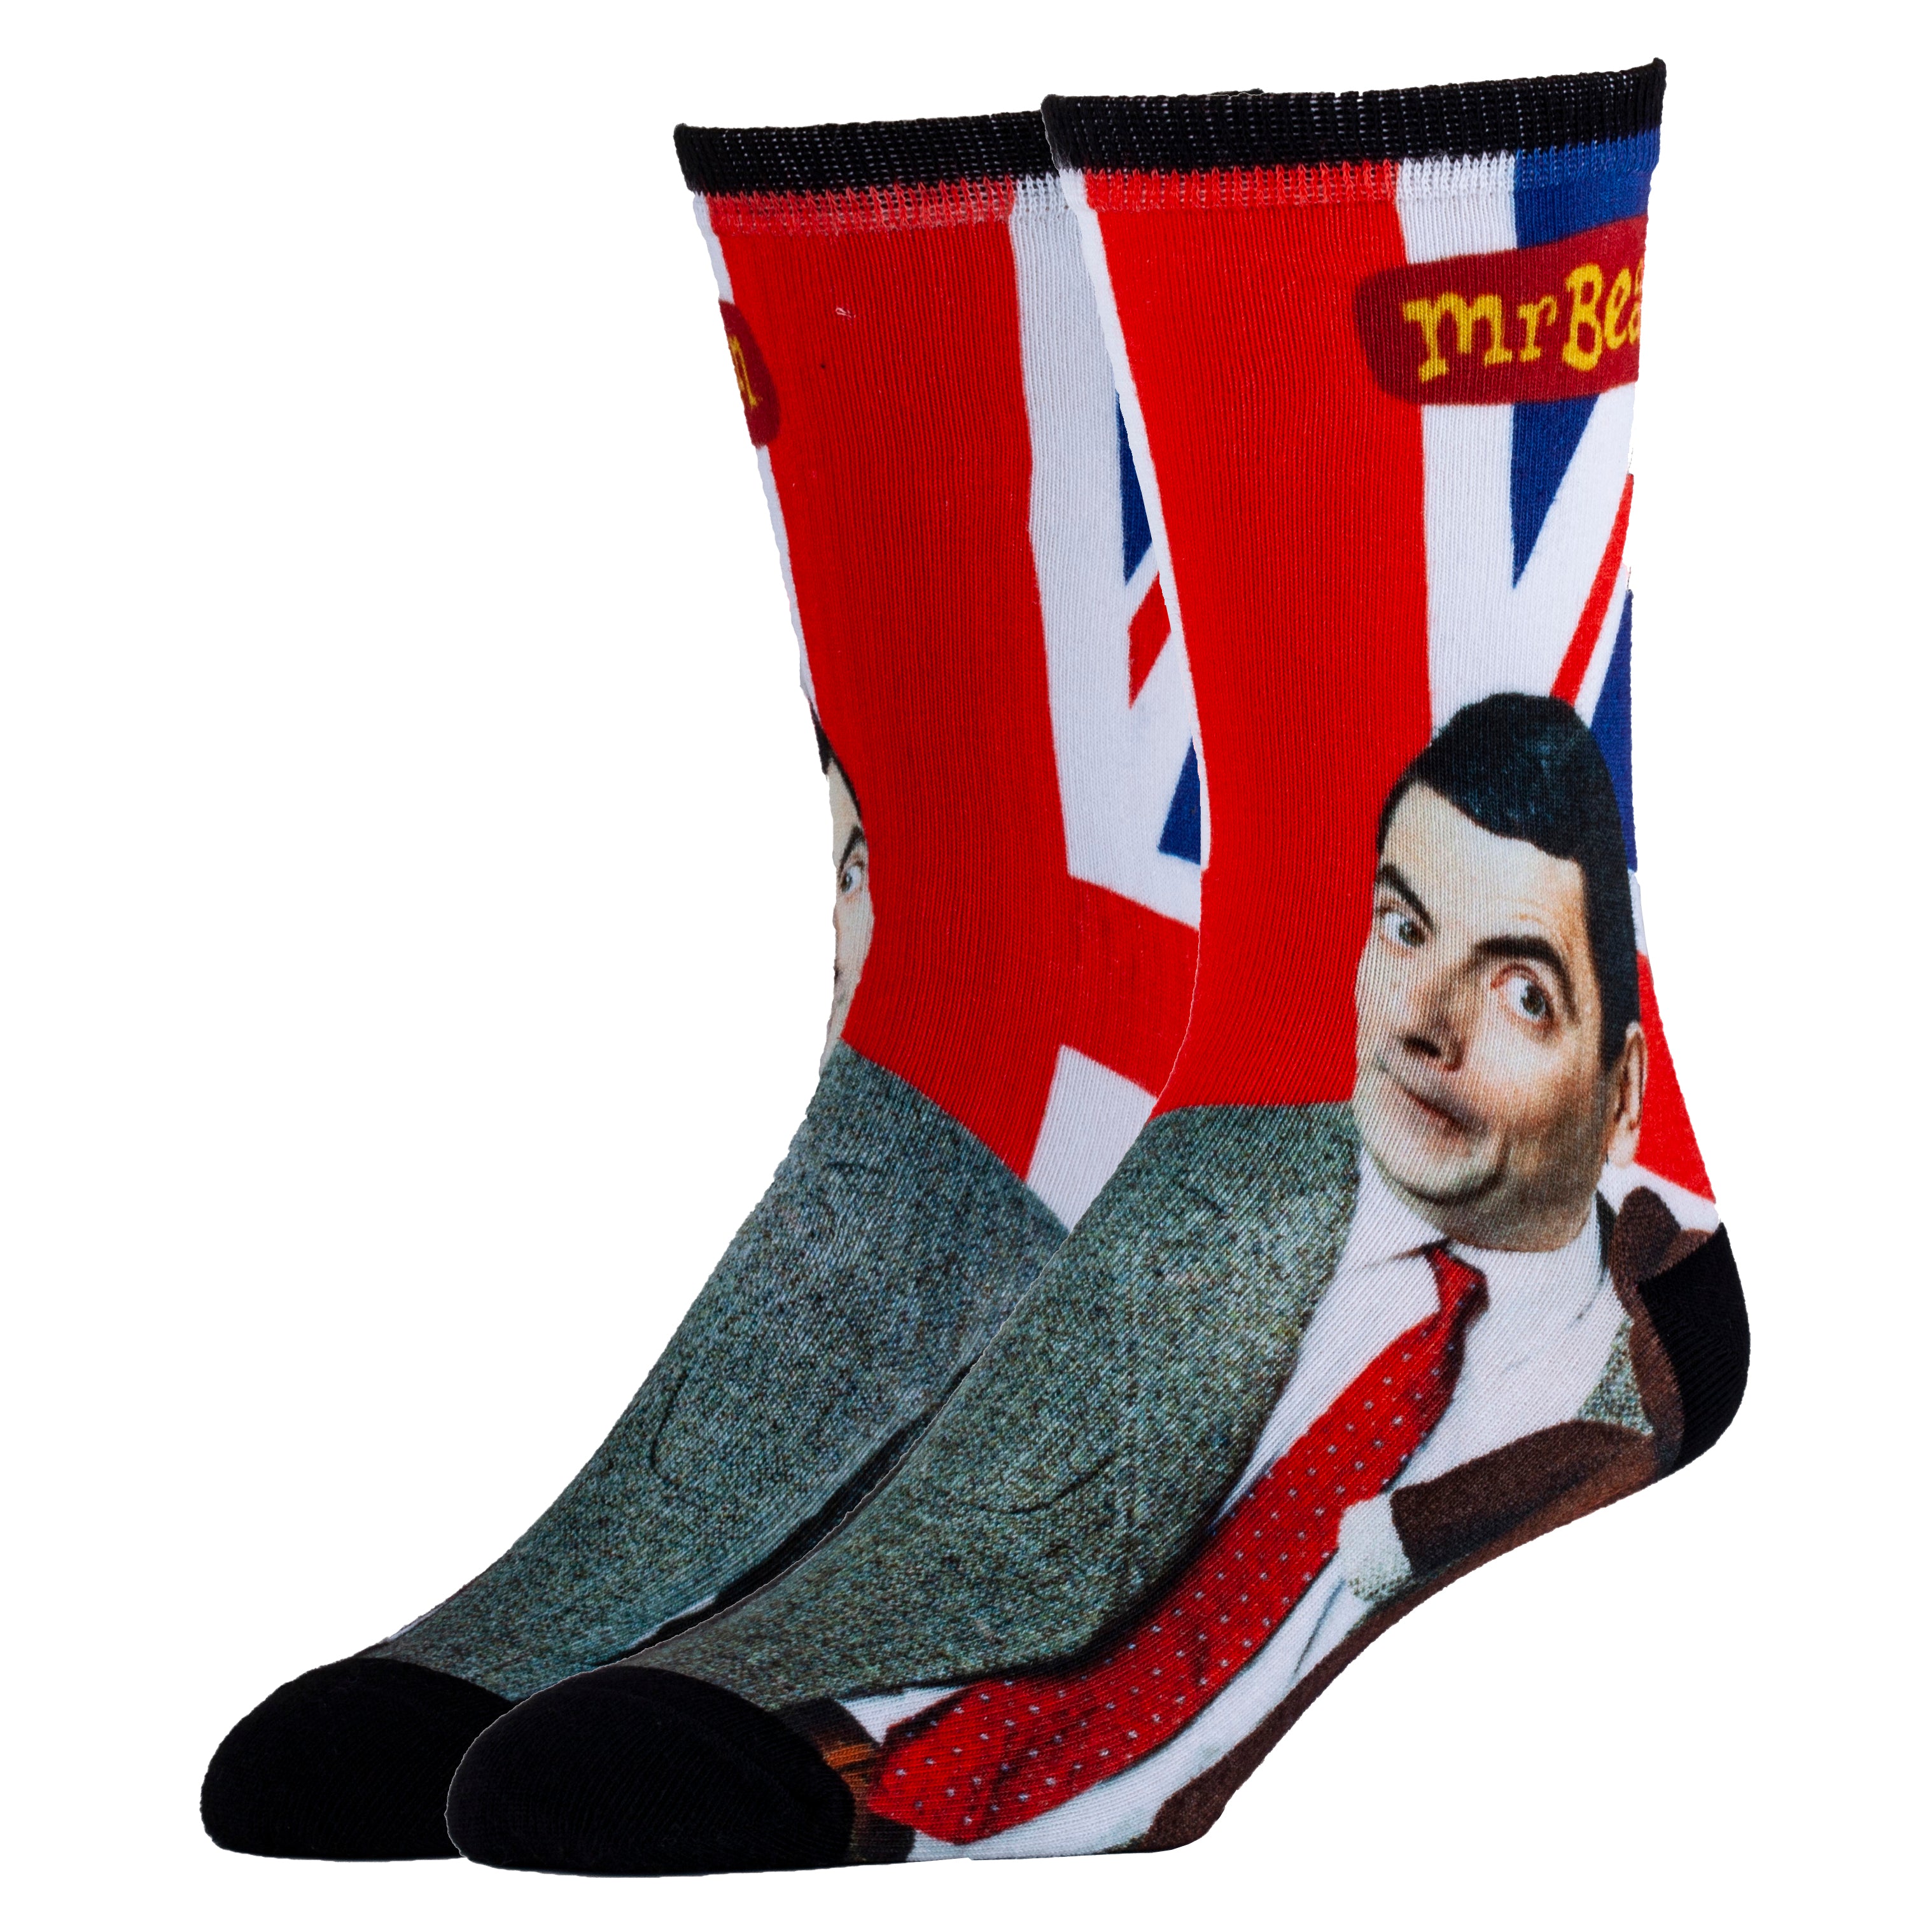 The Real Bean Socks | Novelty Crew Socks For Men